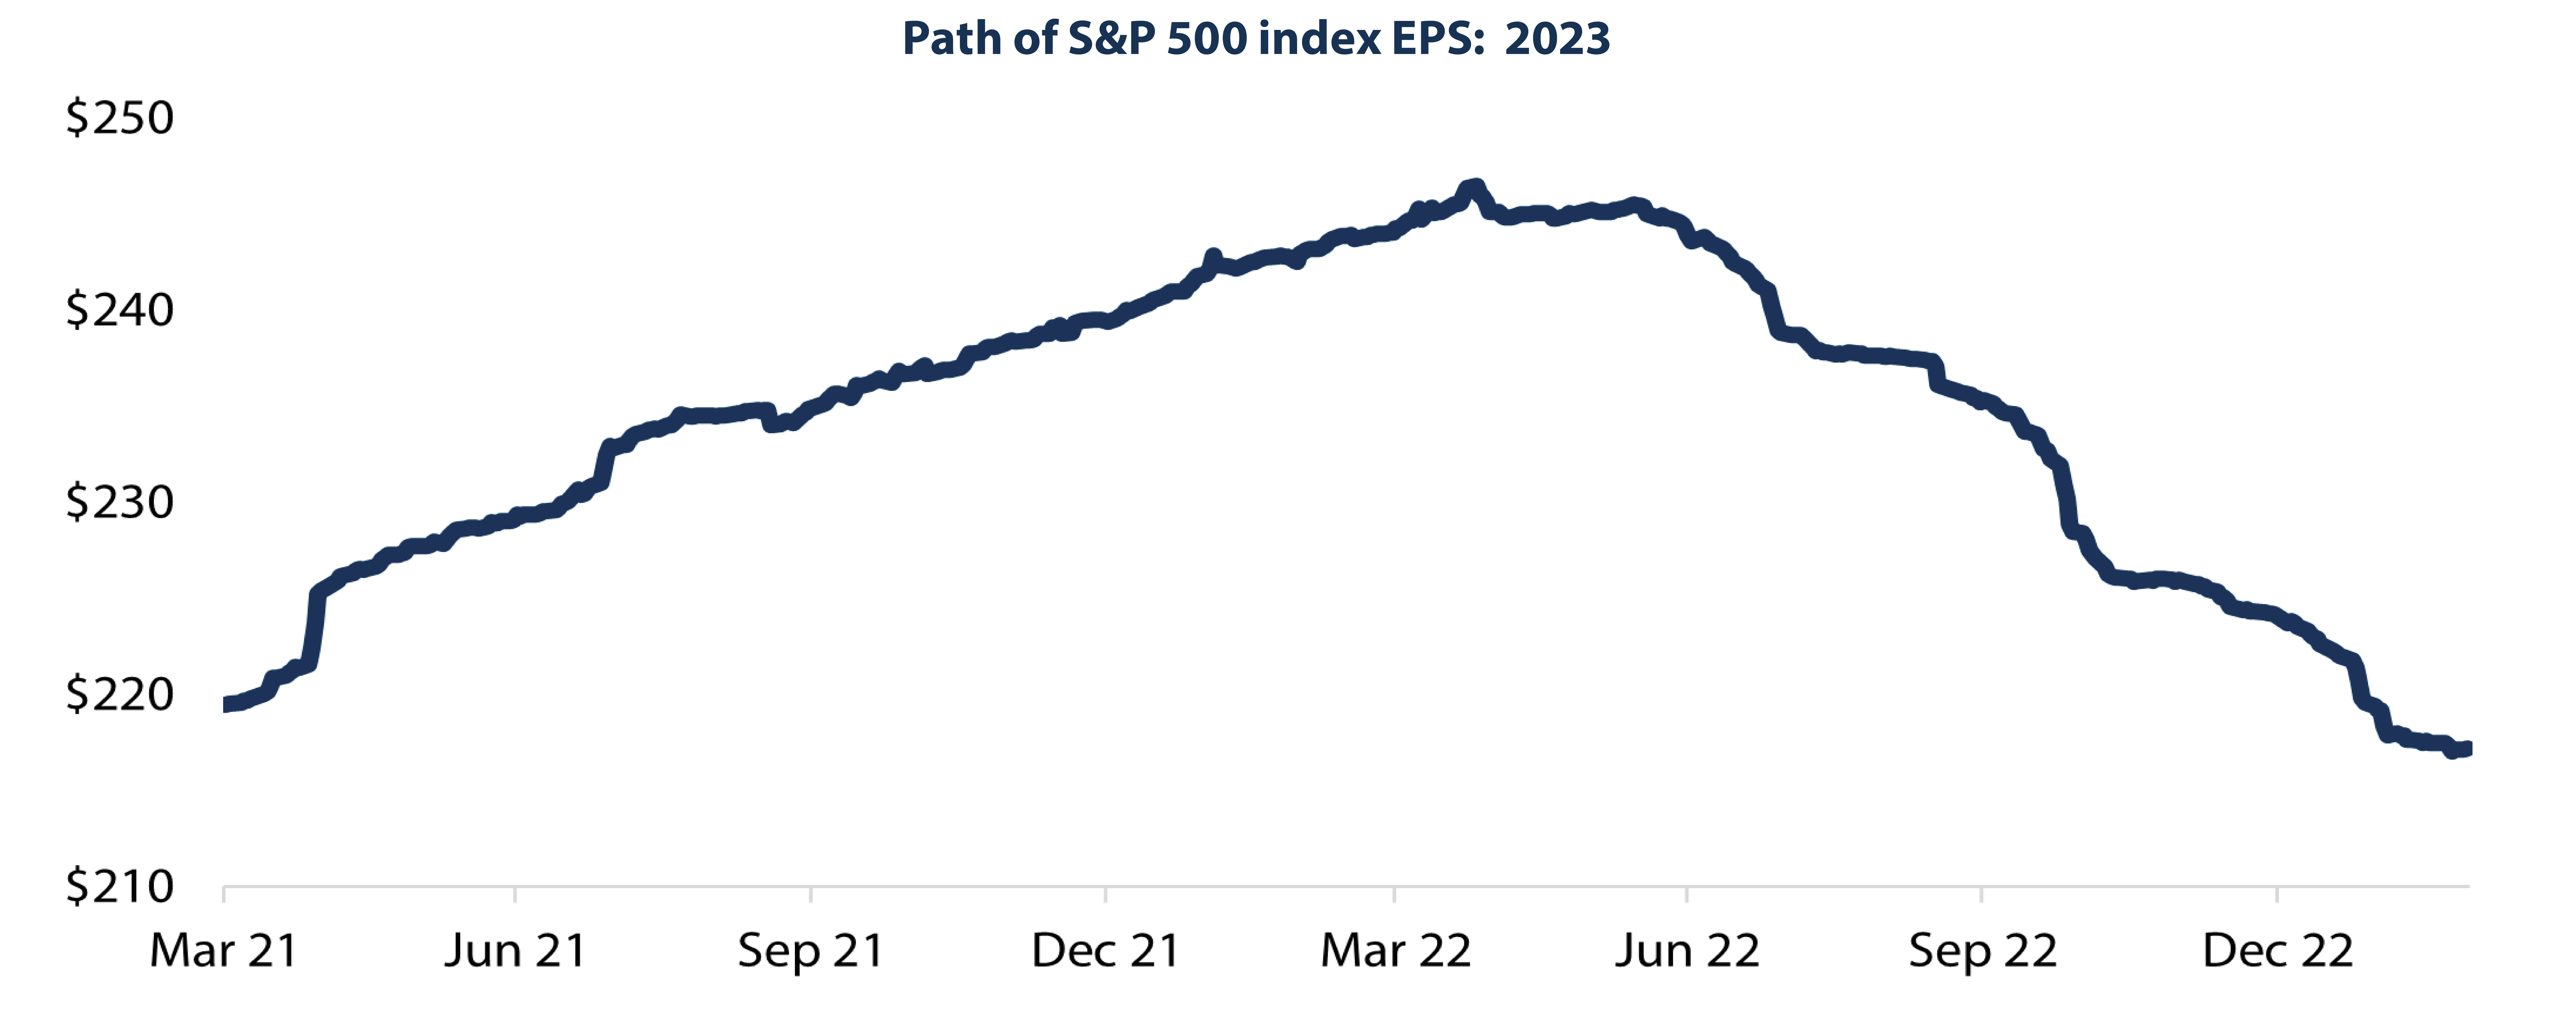 Path of S&P 500 Index